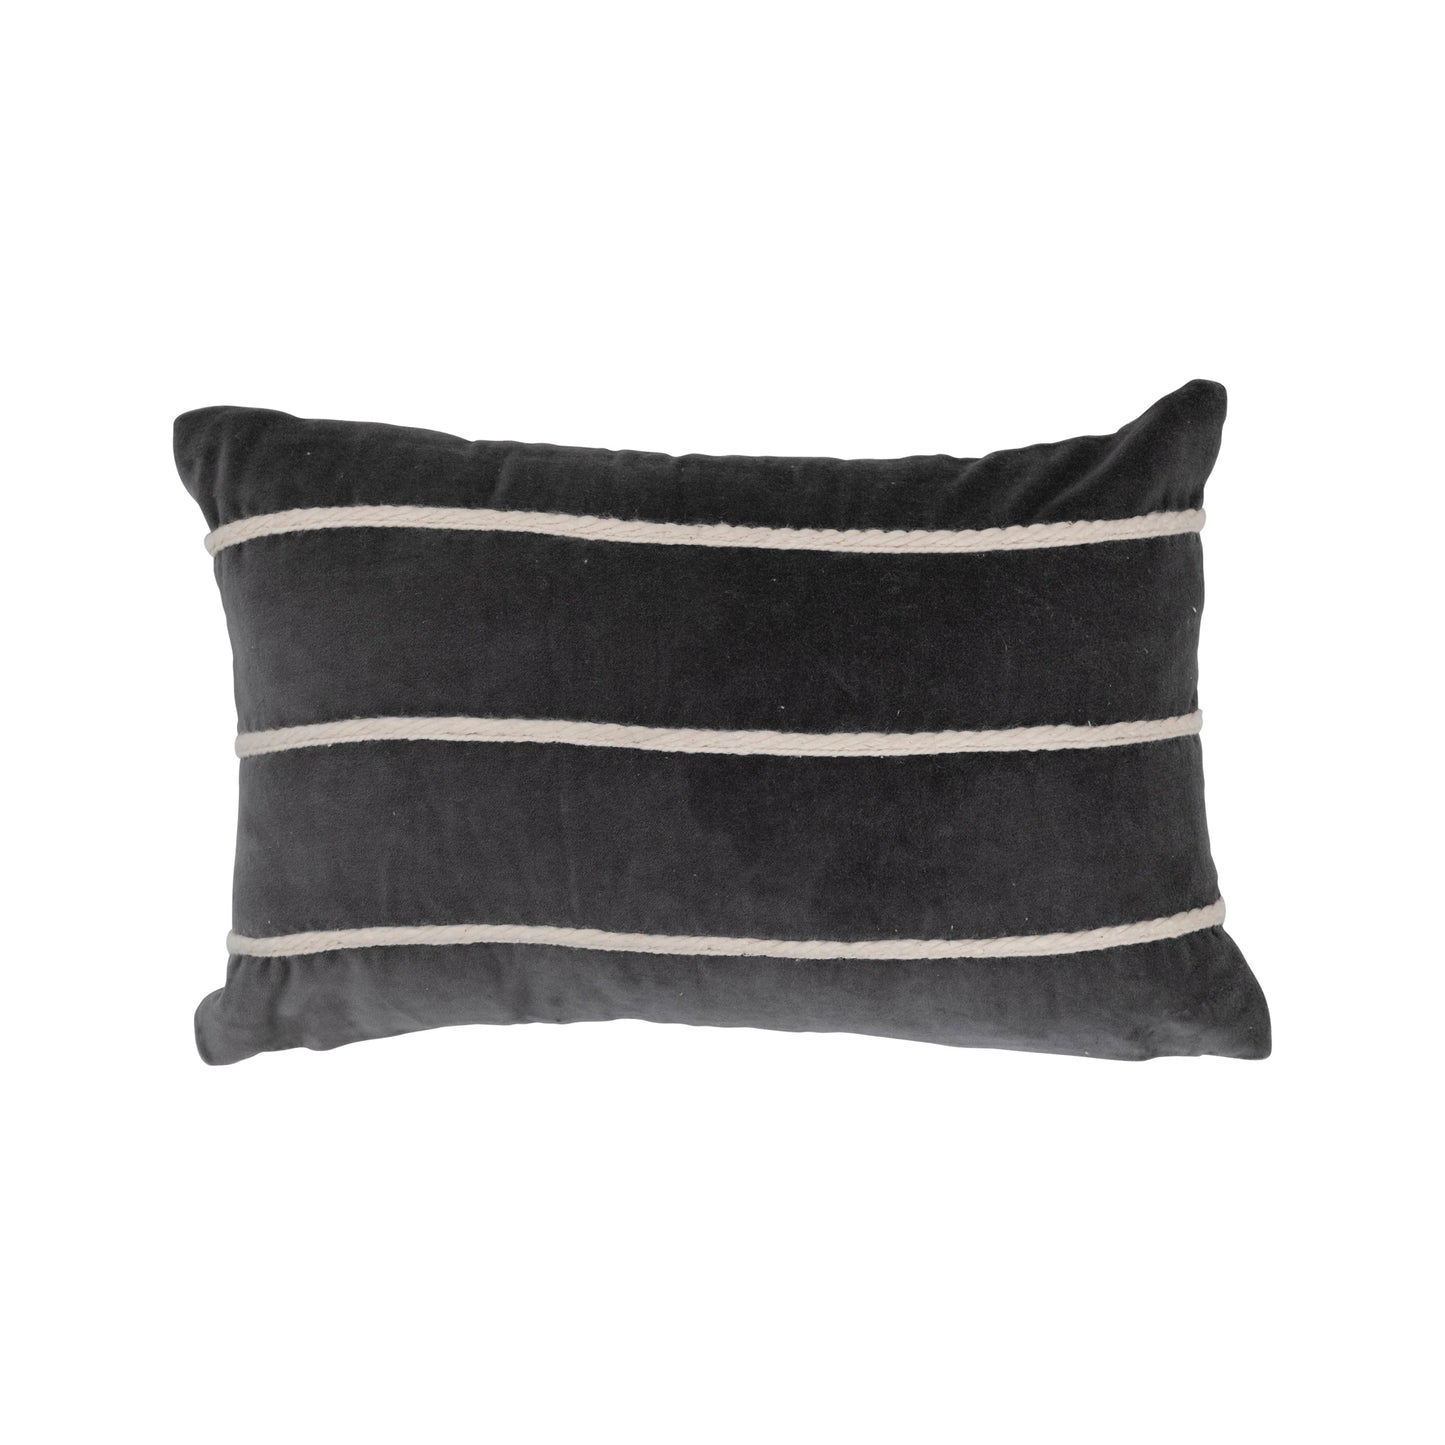 Black + White Stripe Pillow, The Feathered Farmhouse